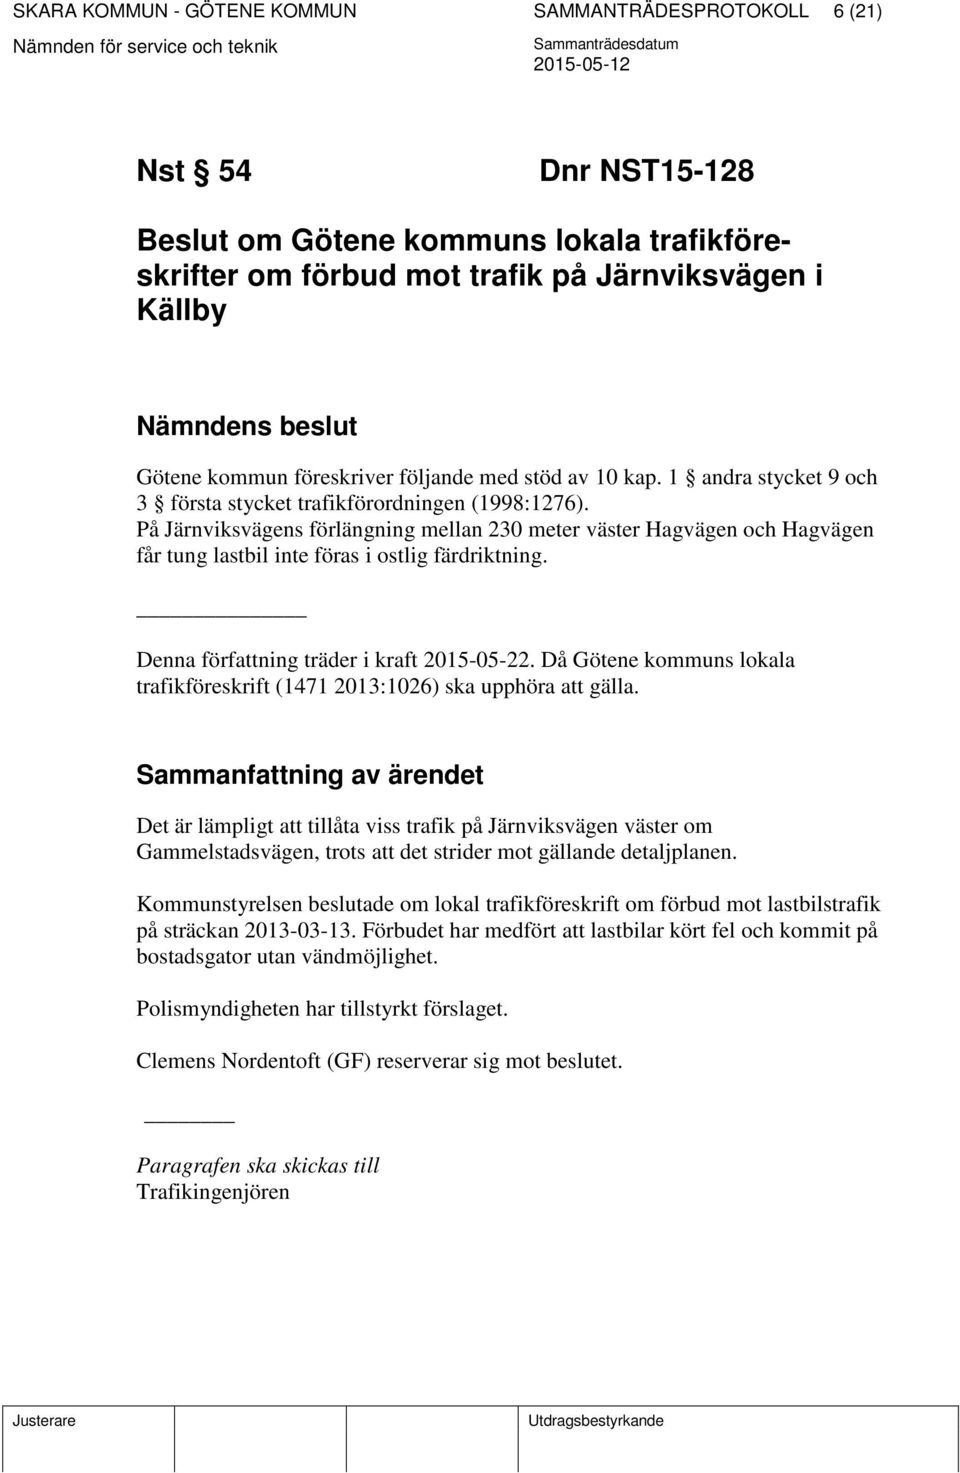 På Järnviksvägens förlängning mellan 230 meter väster Hagvägen och Hagvägen får tung lastbil inte föras i ostlig färdriktning. Denna författning träder i kraft 2015-05-22.